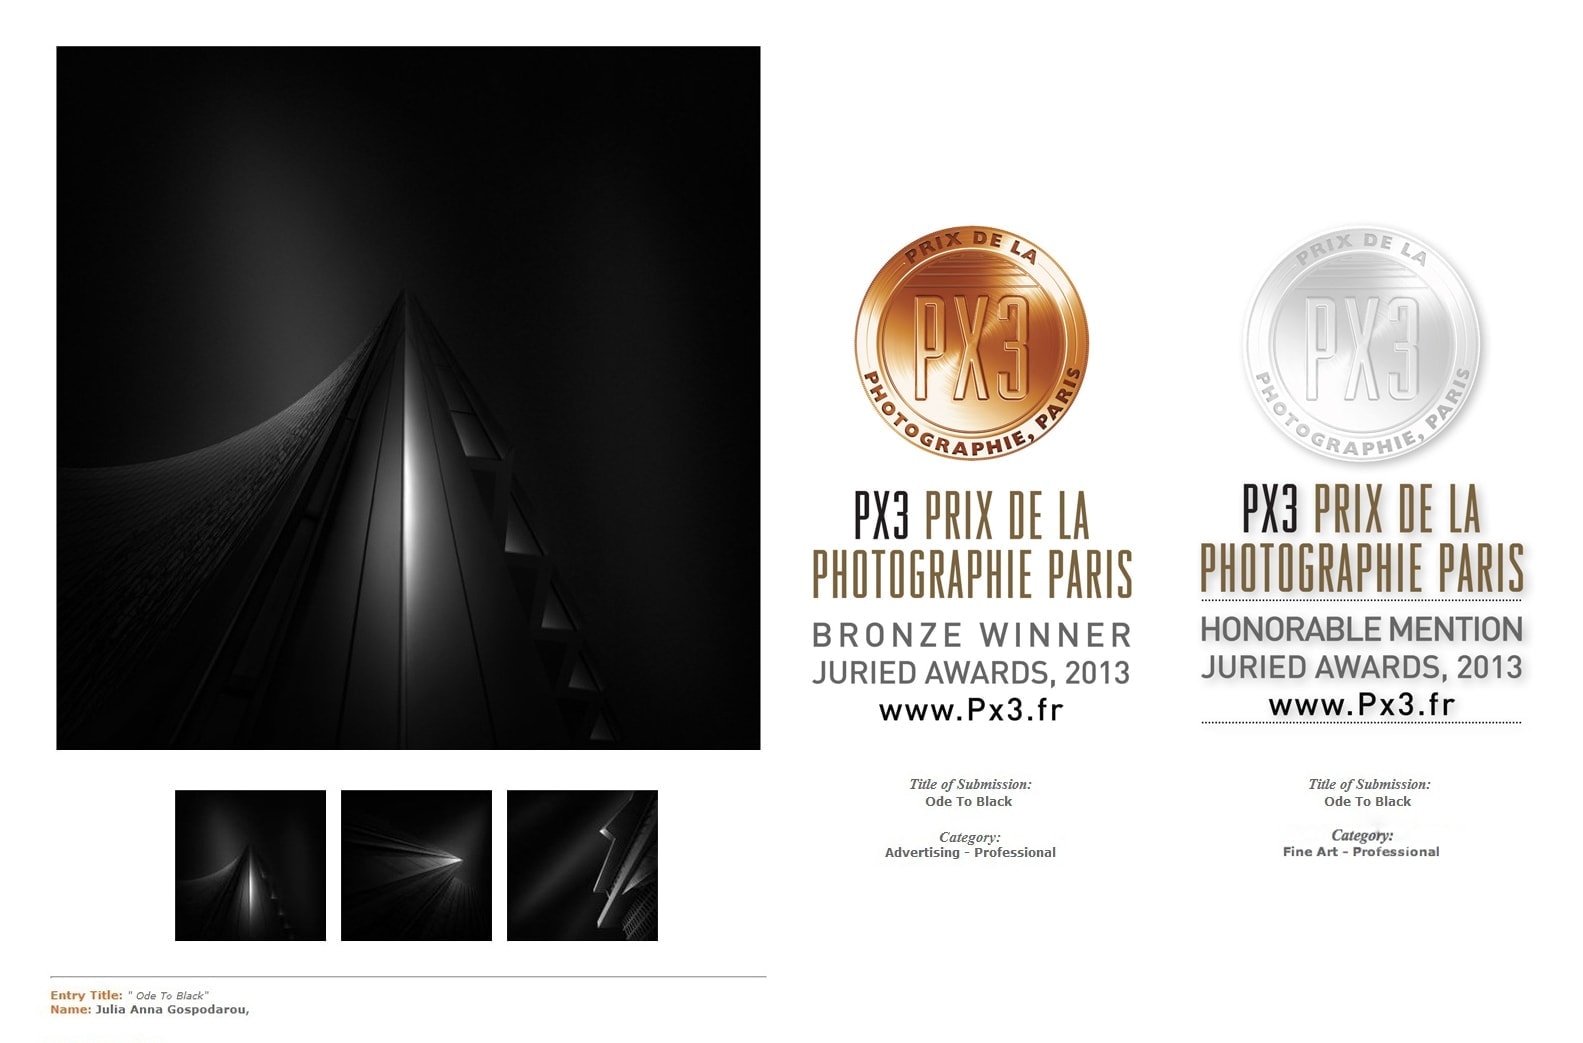 Third Prize & Honorable Mention - PX3 - Prix de la Photographie Paris 2013